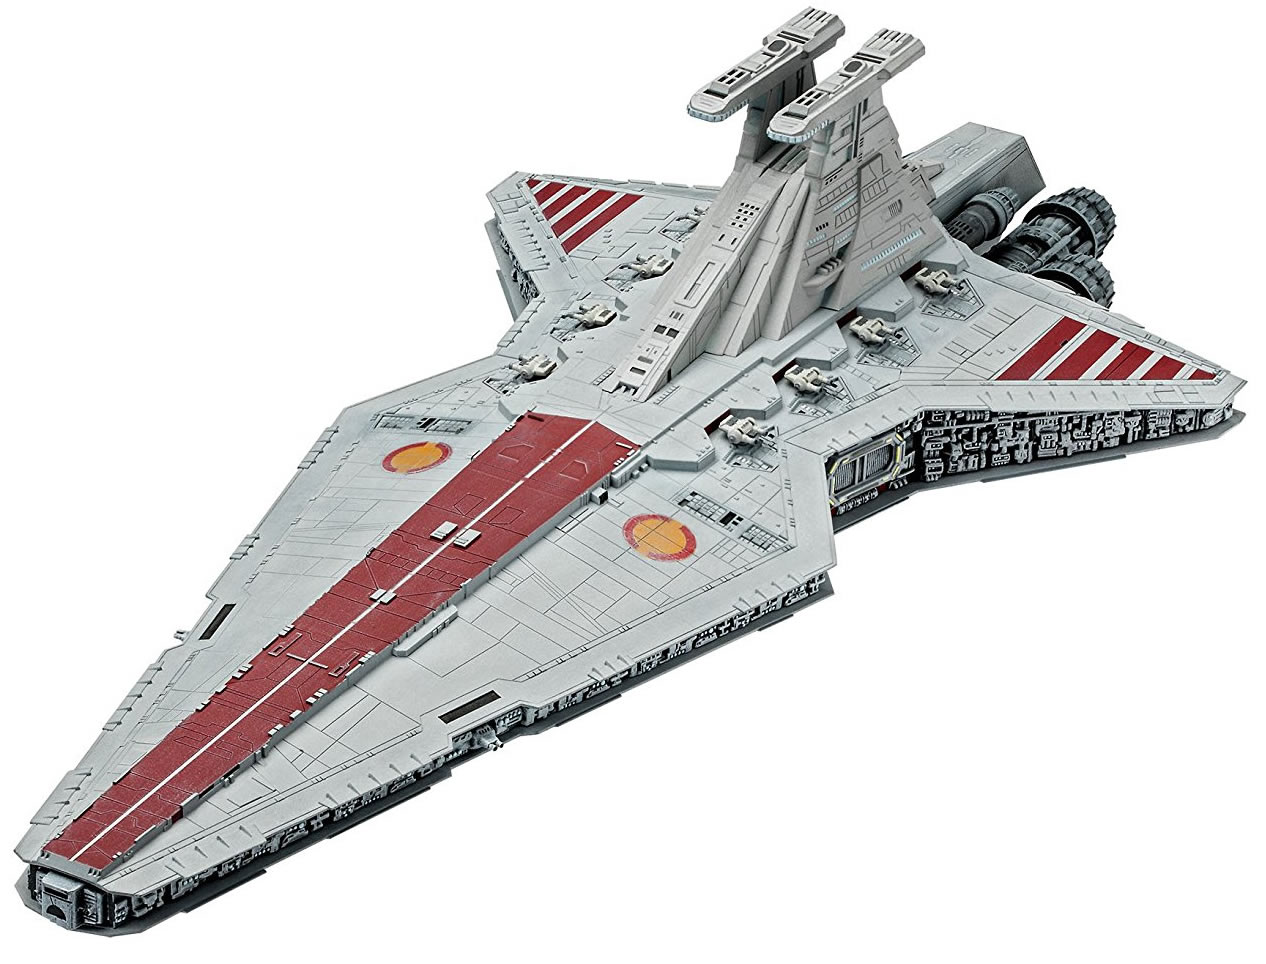 Revell 1/2700 Republic Star Destroyer Model Paint Set # 06053